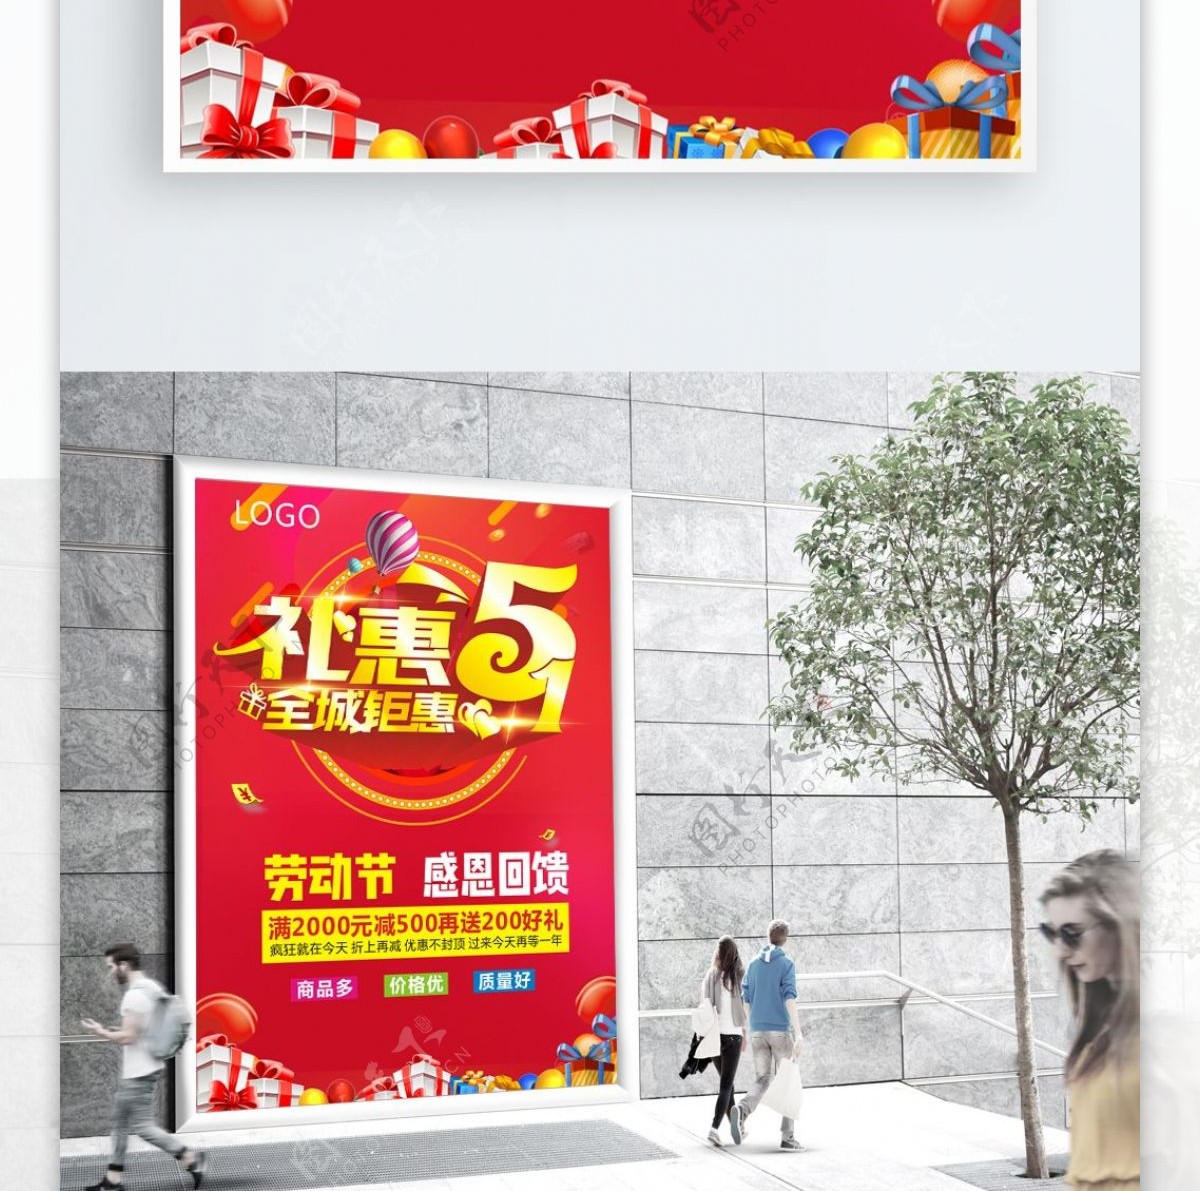 礼惠劳动节海报设计cdr模板